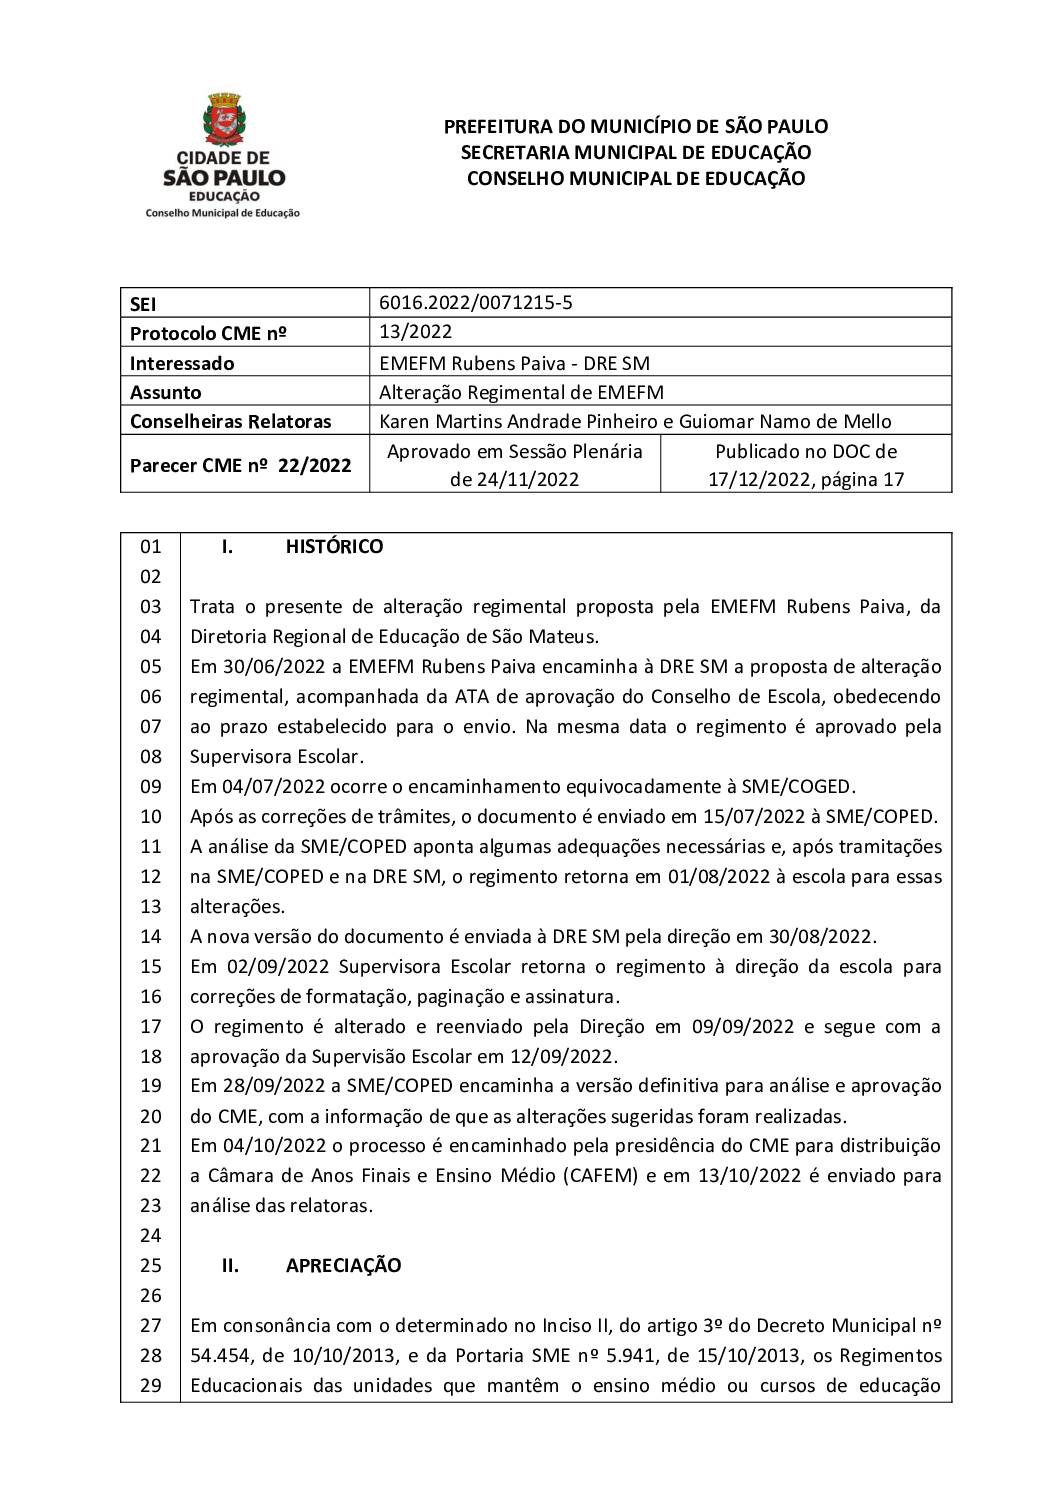 Parecer CME nº 22/2022 - EMEFM Rubens Paiva (DRE SM) - Alteração Regimental de EMEFM